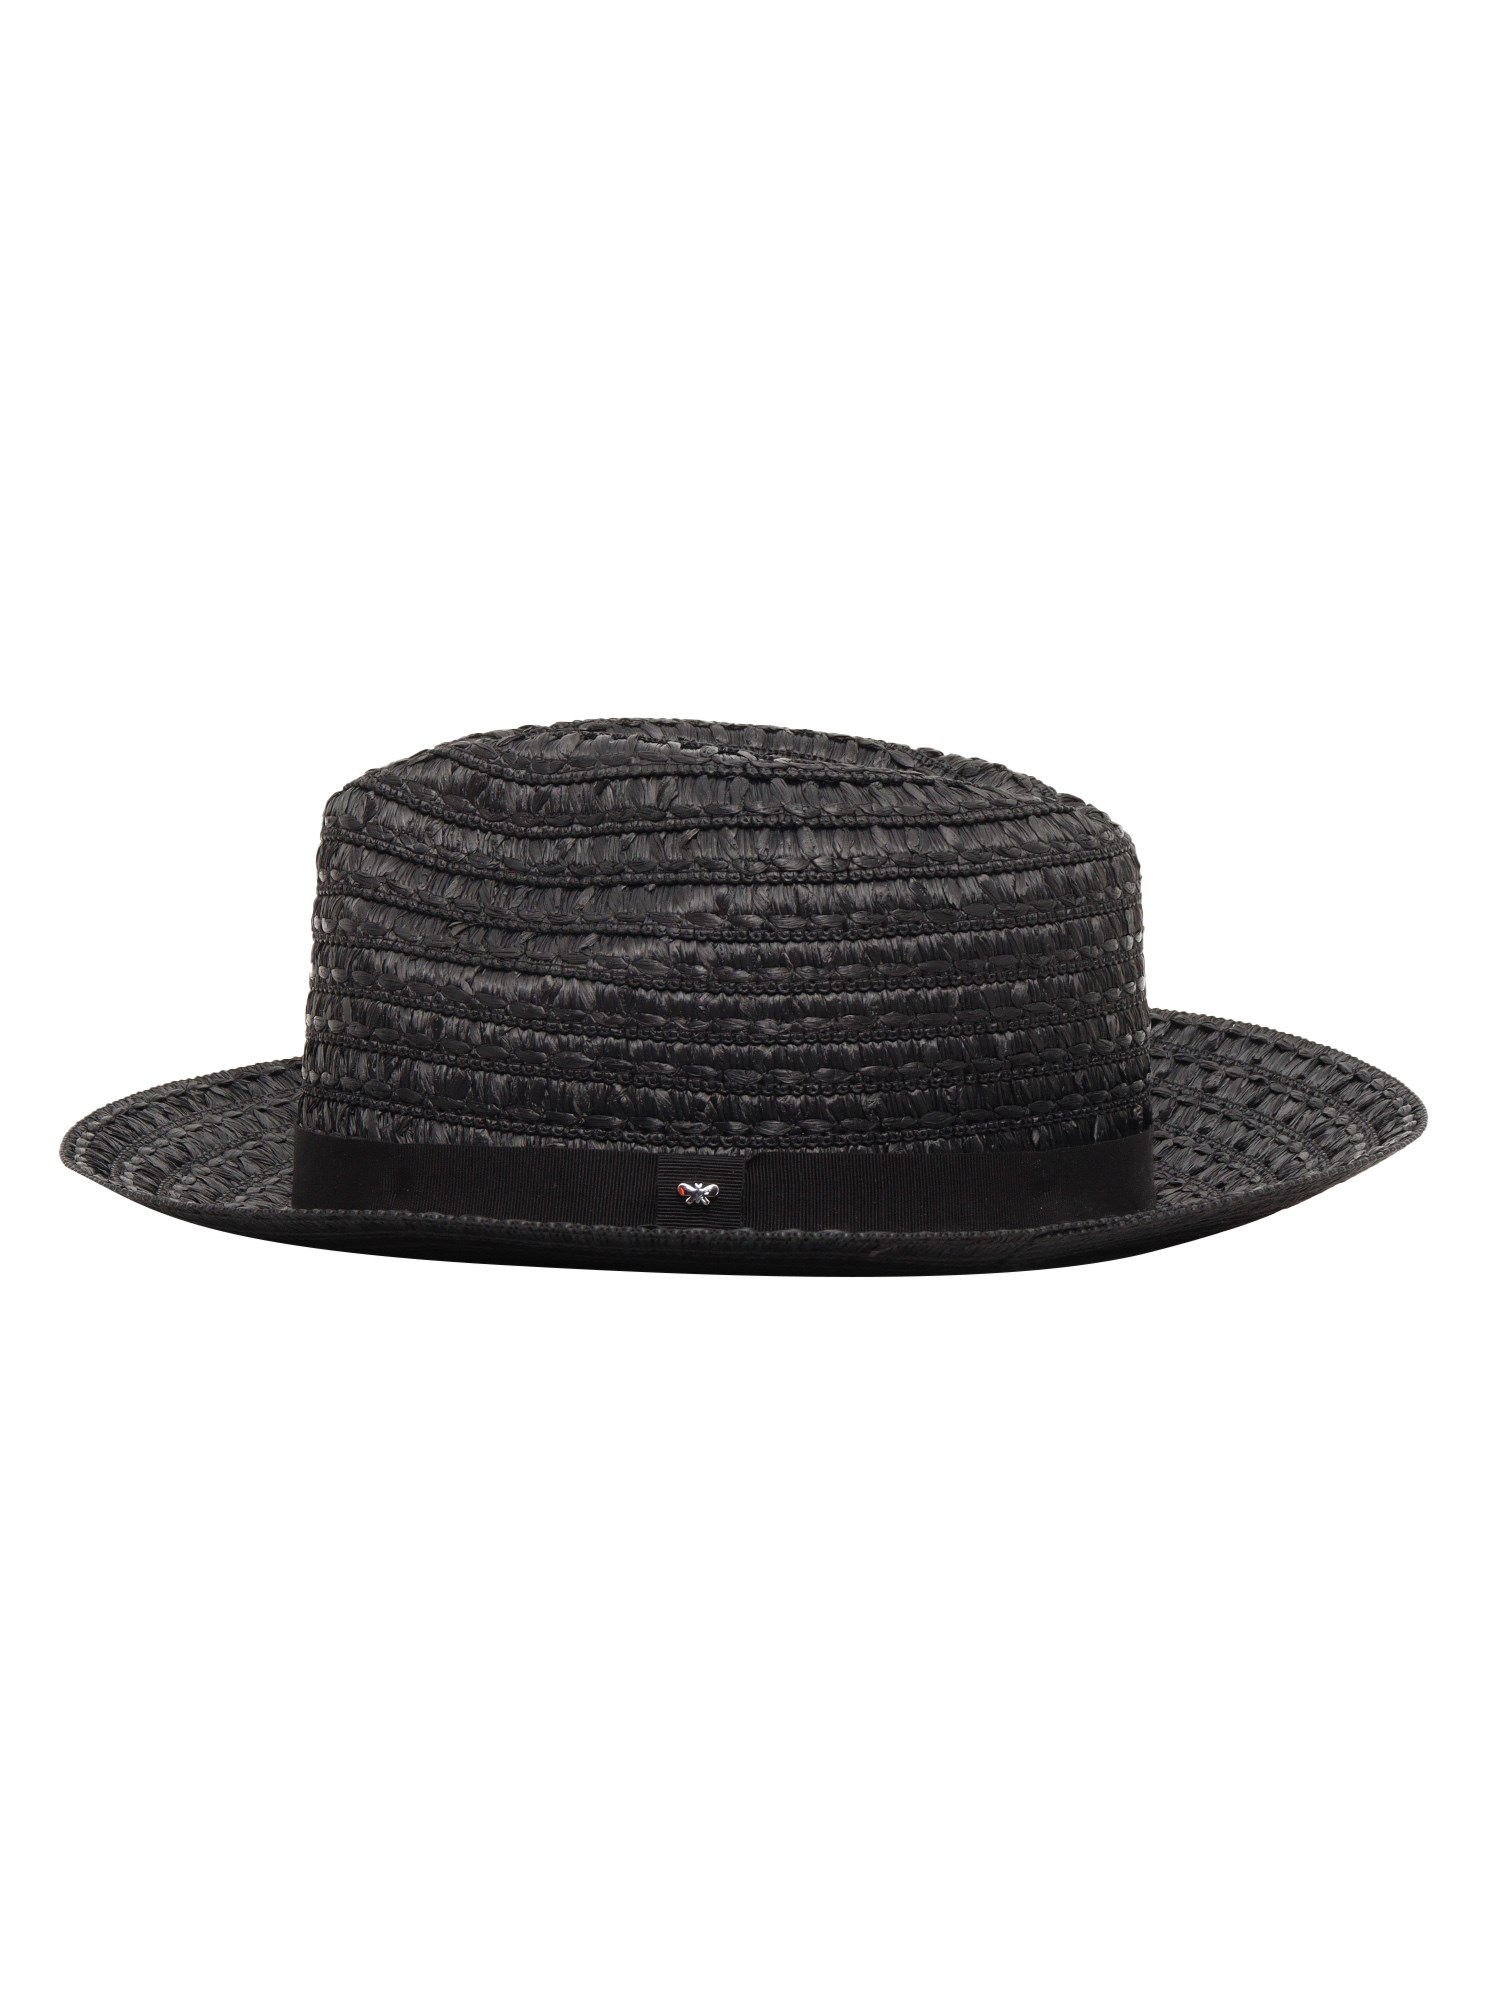 Max Mara Black Agenda Hat